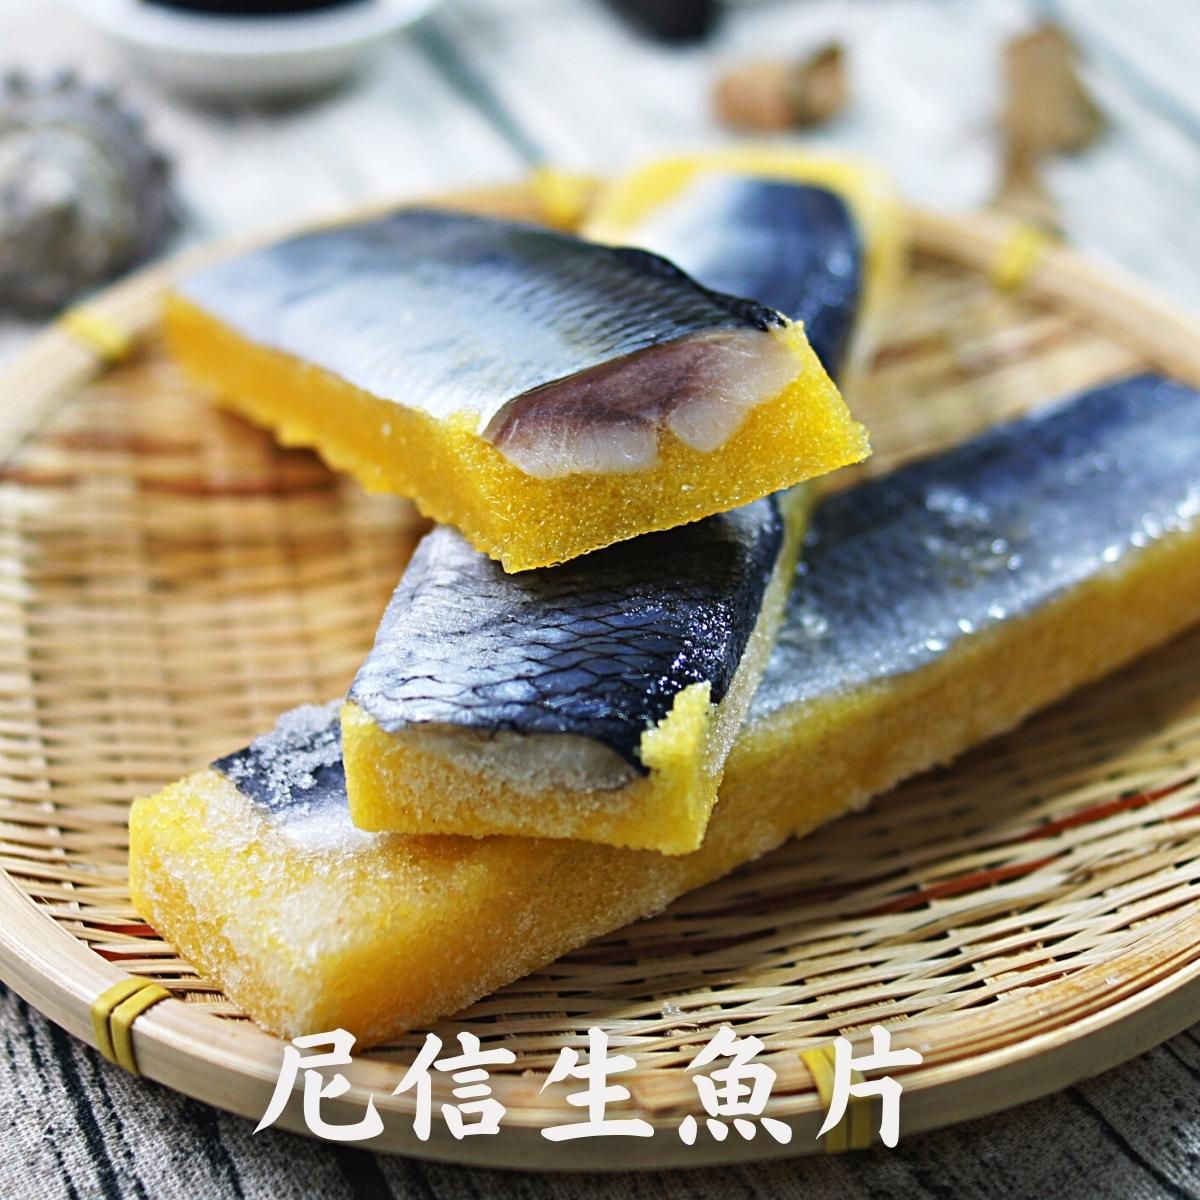 尼信/黃金鯡魚/尼信生魚片/鯟魚黃金